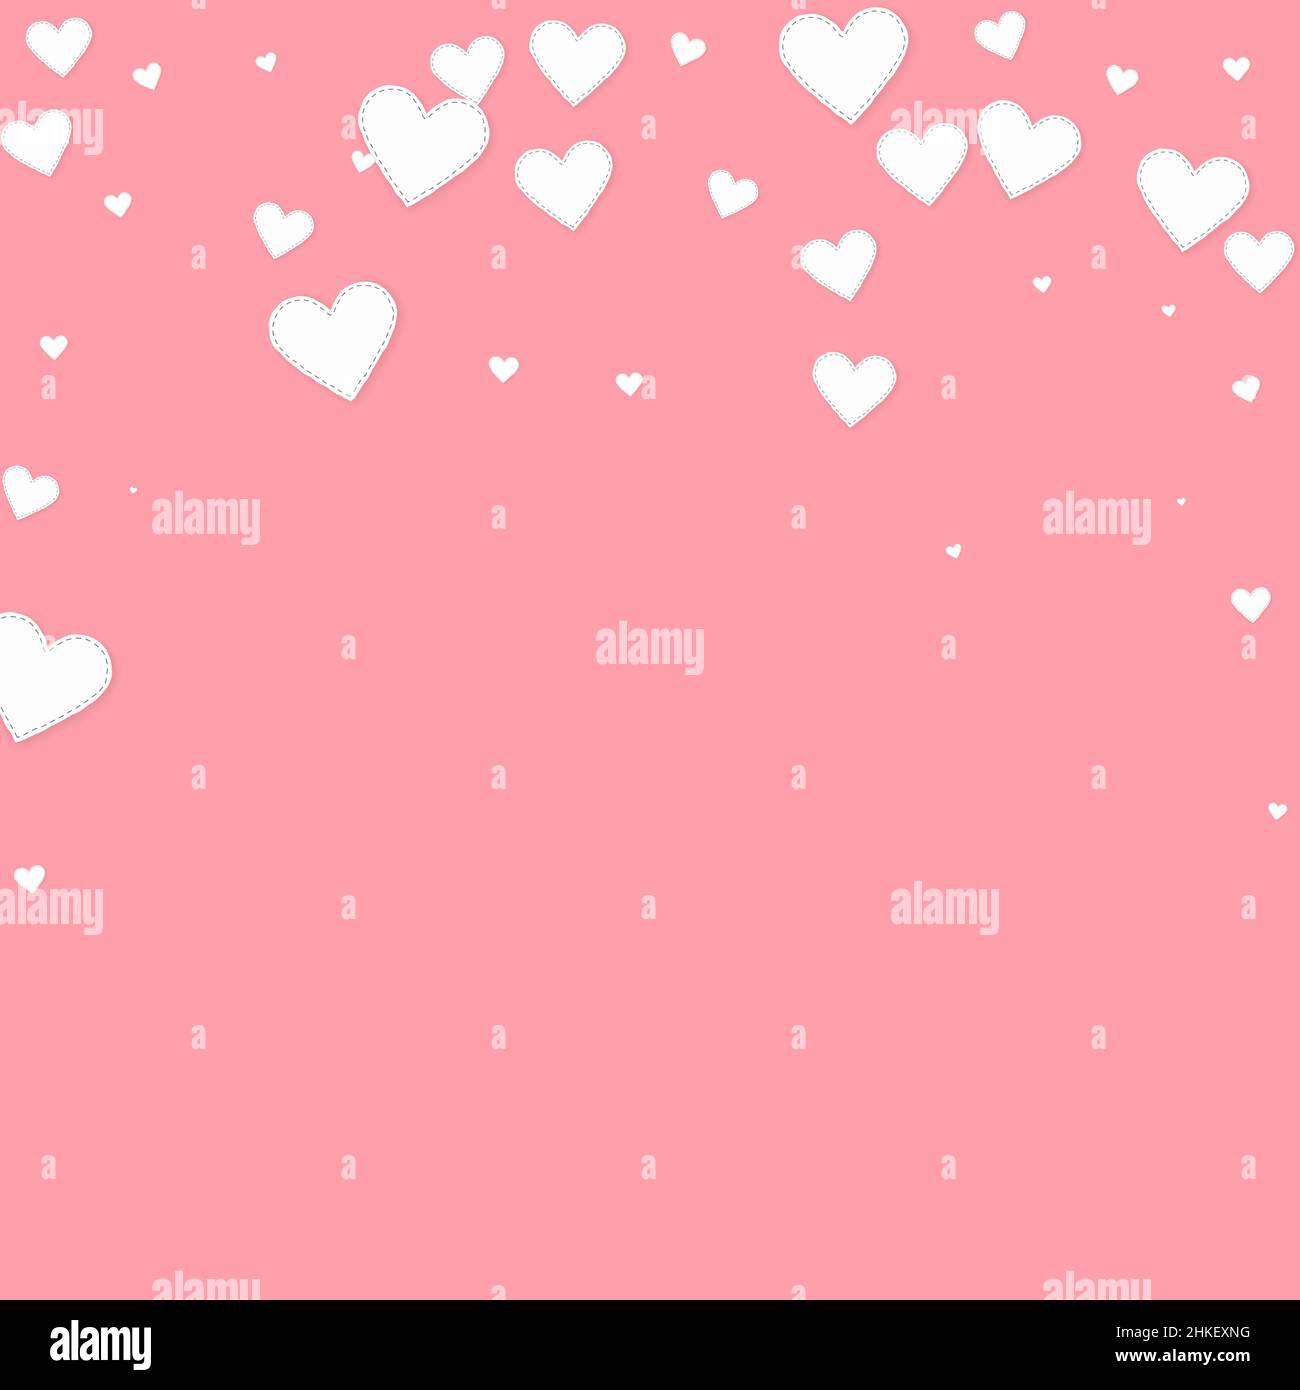 Cuore bianco amore confettis. San Valentino caduta pioggia sfondo ammirevole. I cuori di carta cuciti cadenti si confettano su sfondo rosa. La tua creatività Illustrazione Vettoriale